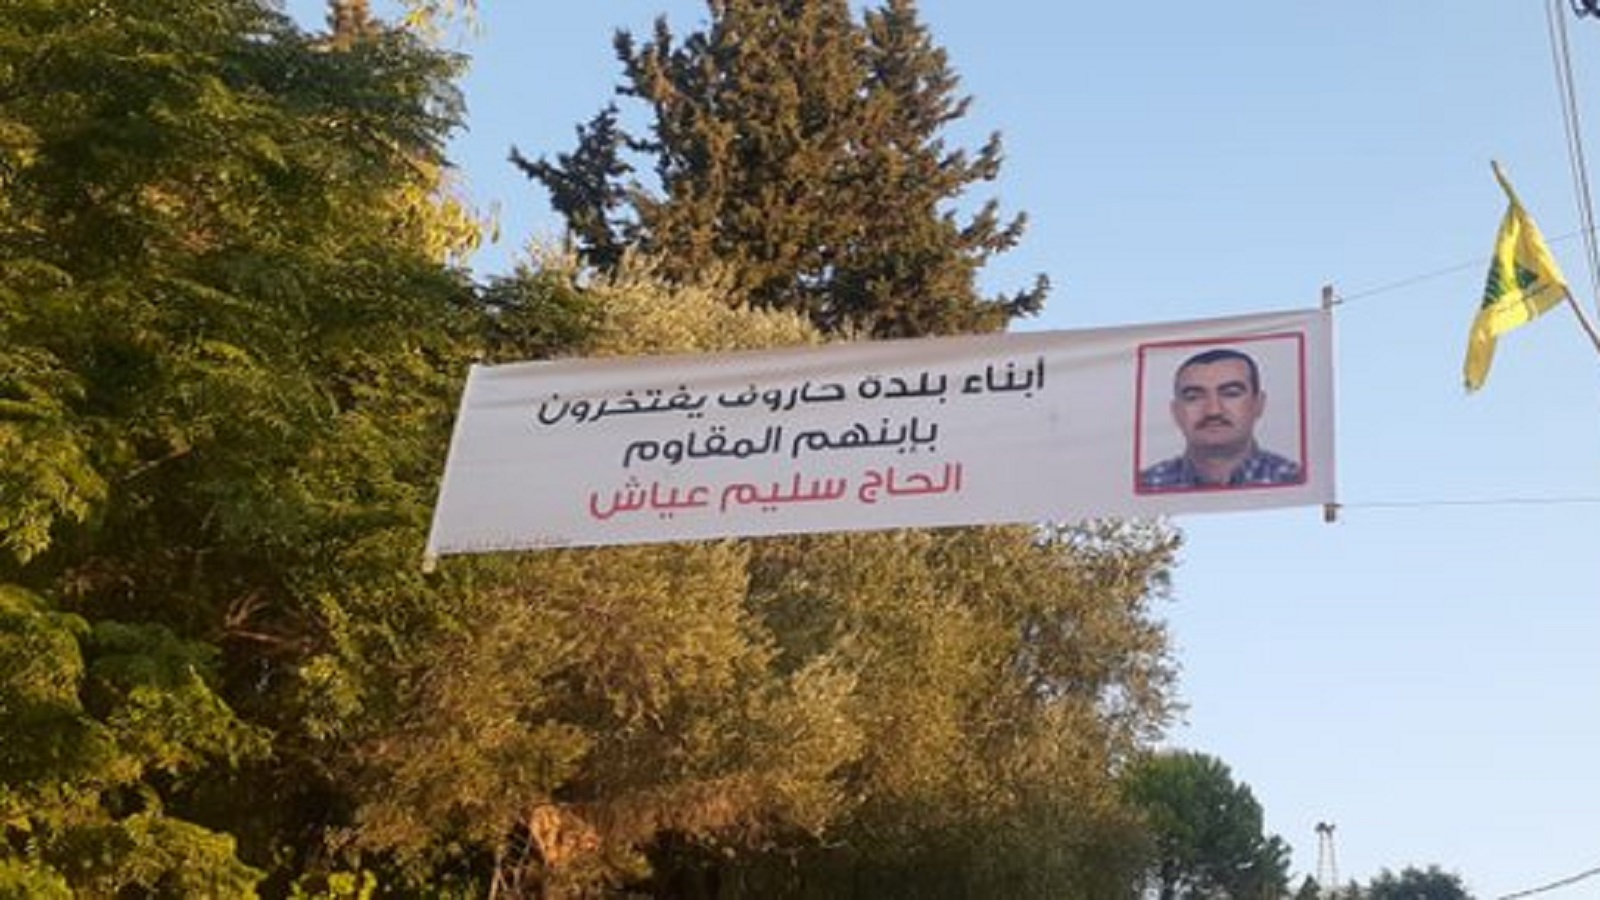 جمهور "حزب الله" مرتبك:تبرئة سليم عياش..أم دعمه بعد إدانته؟